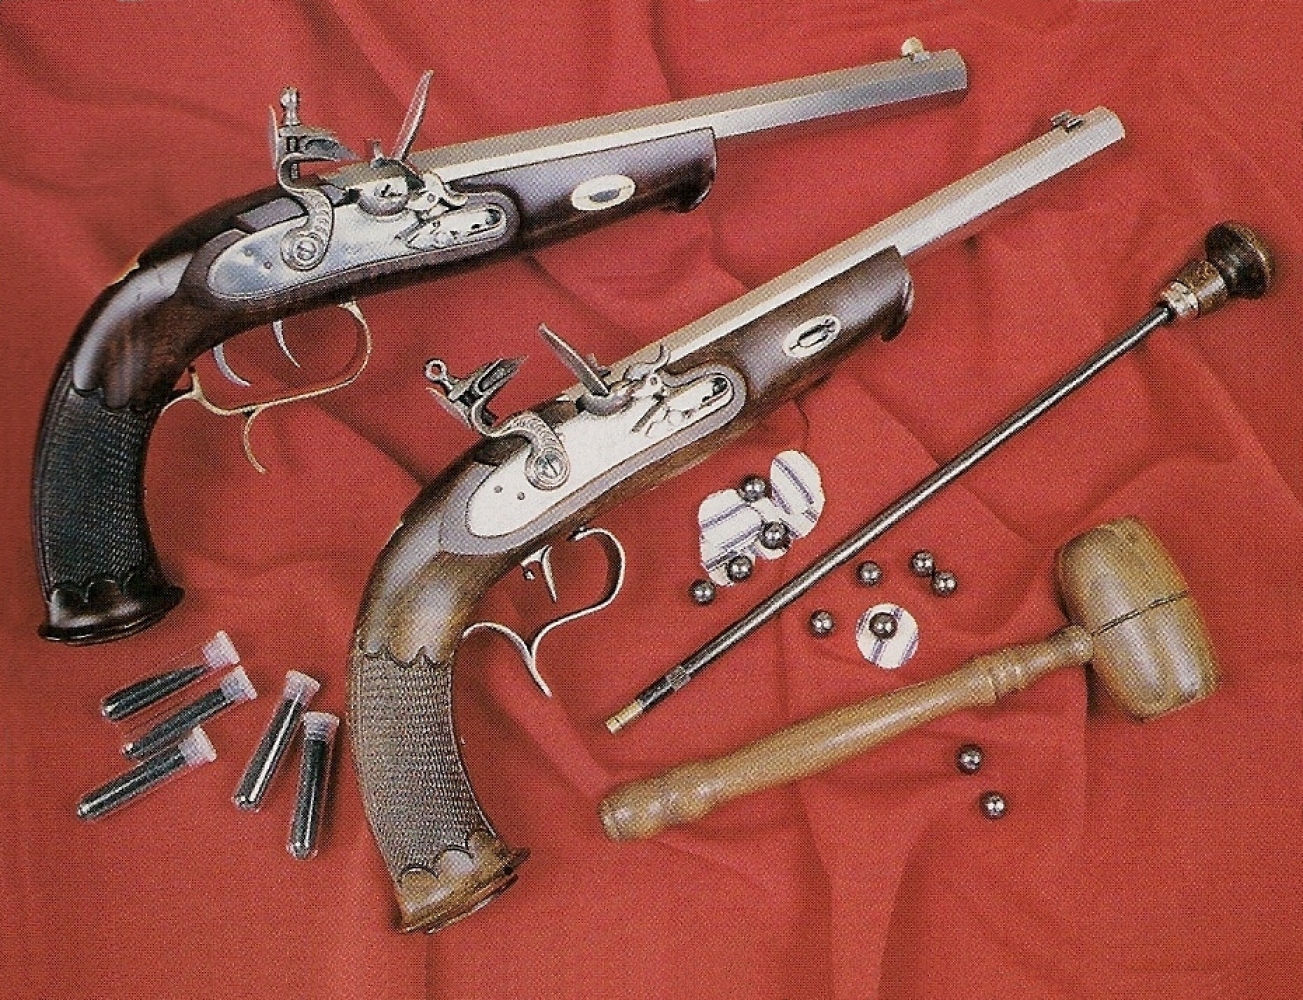 Quelques accessoires se révèlent indispensables au moment du tir, à commencer par une baguette de chargement puisque le fût de ces pistolets en est démuni.